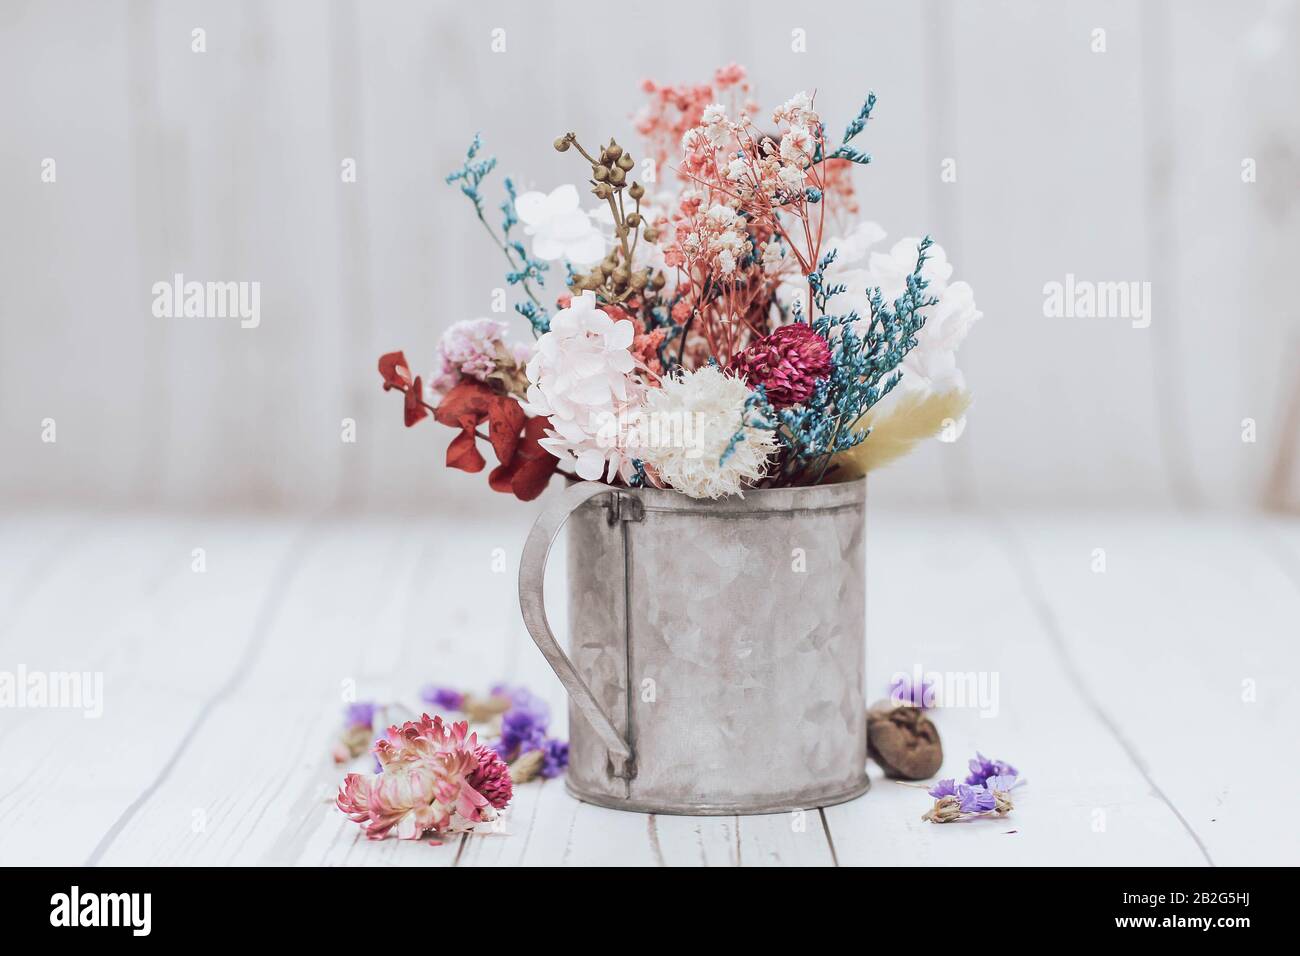 Fiori secchi in una tazza rustica. Composizione boho. Composizione floreale romantica. Foto Stock